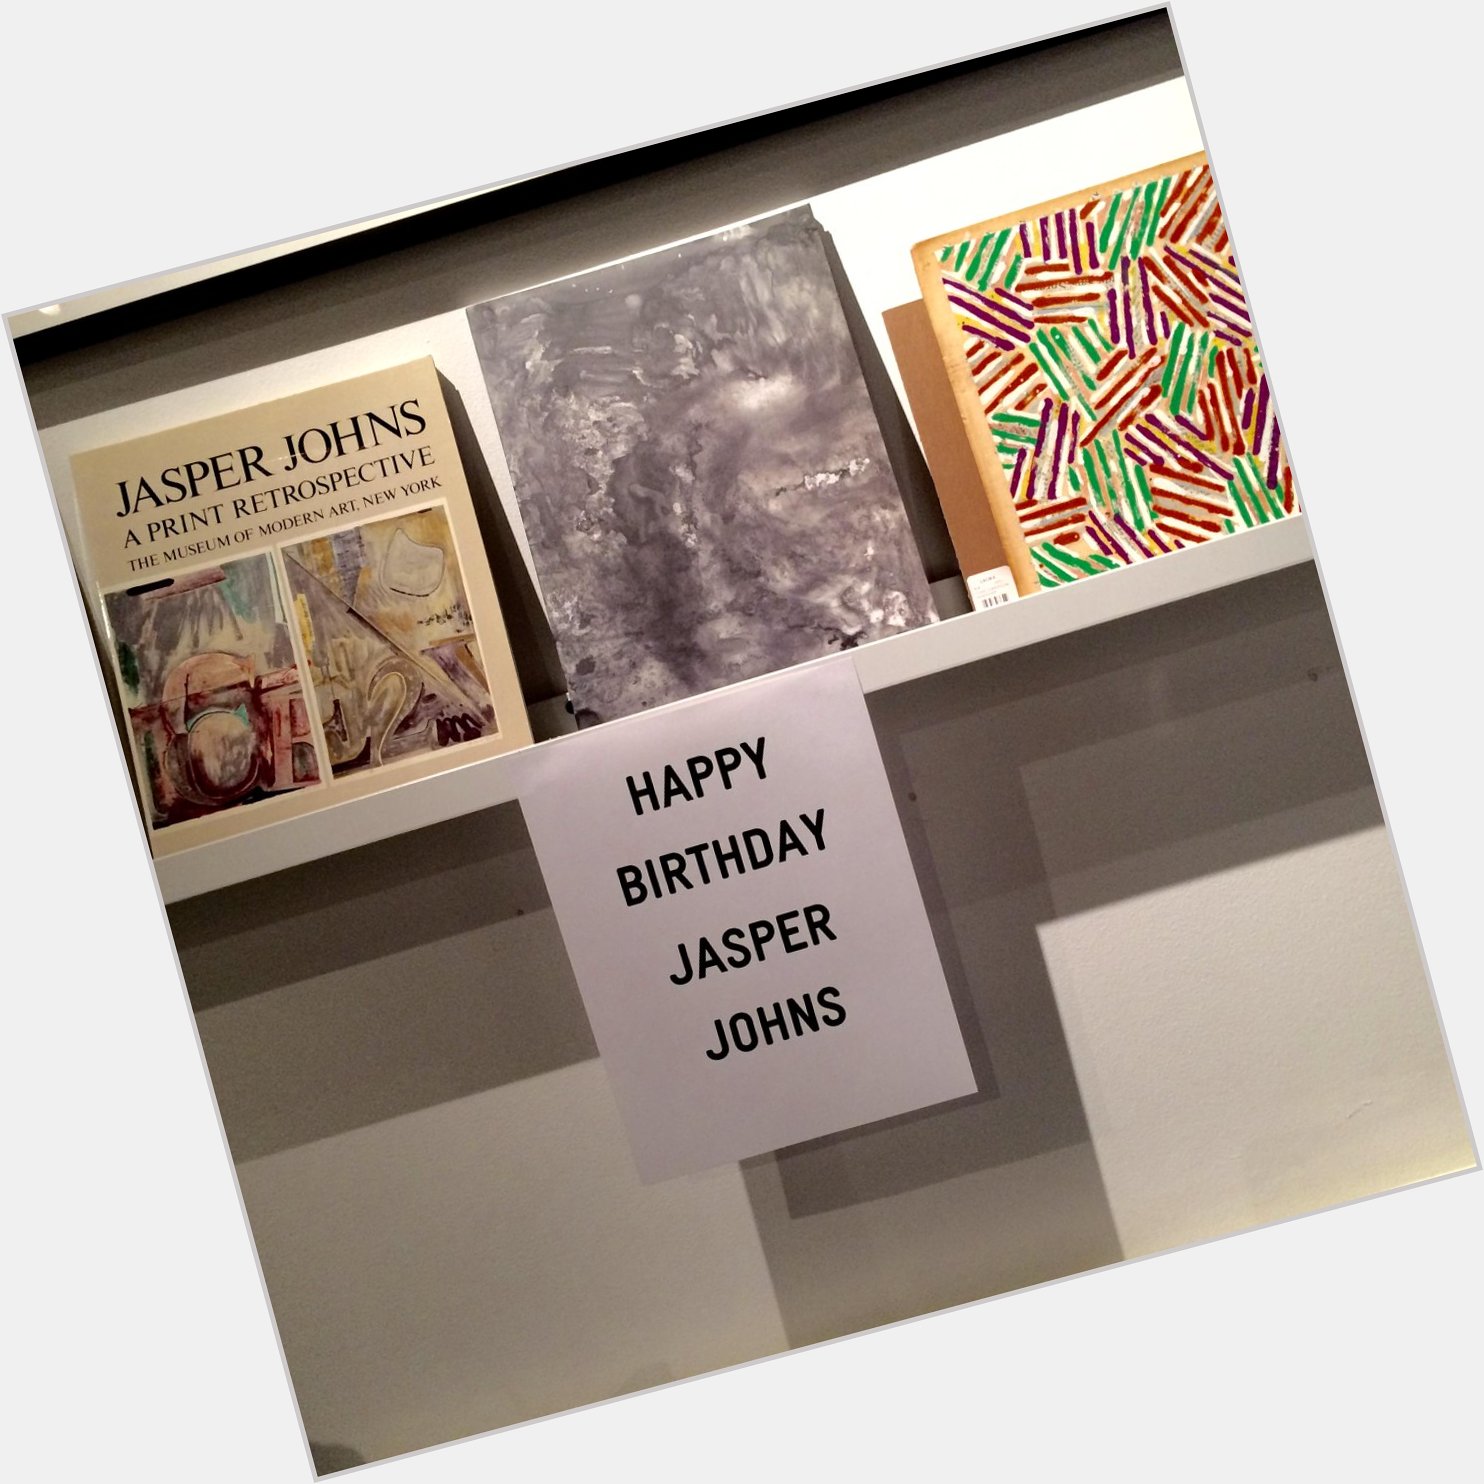 Happy Birthday Jasper Johns!   